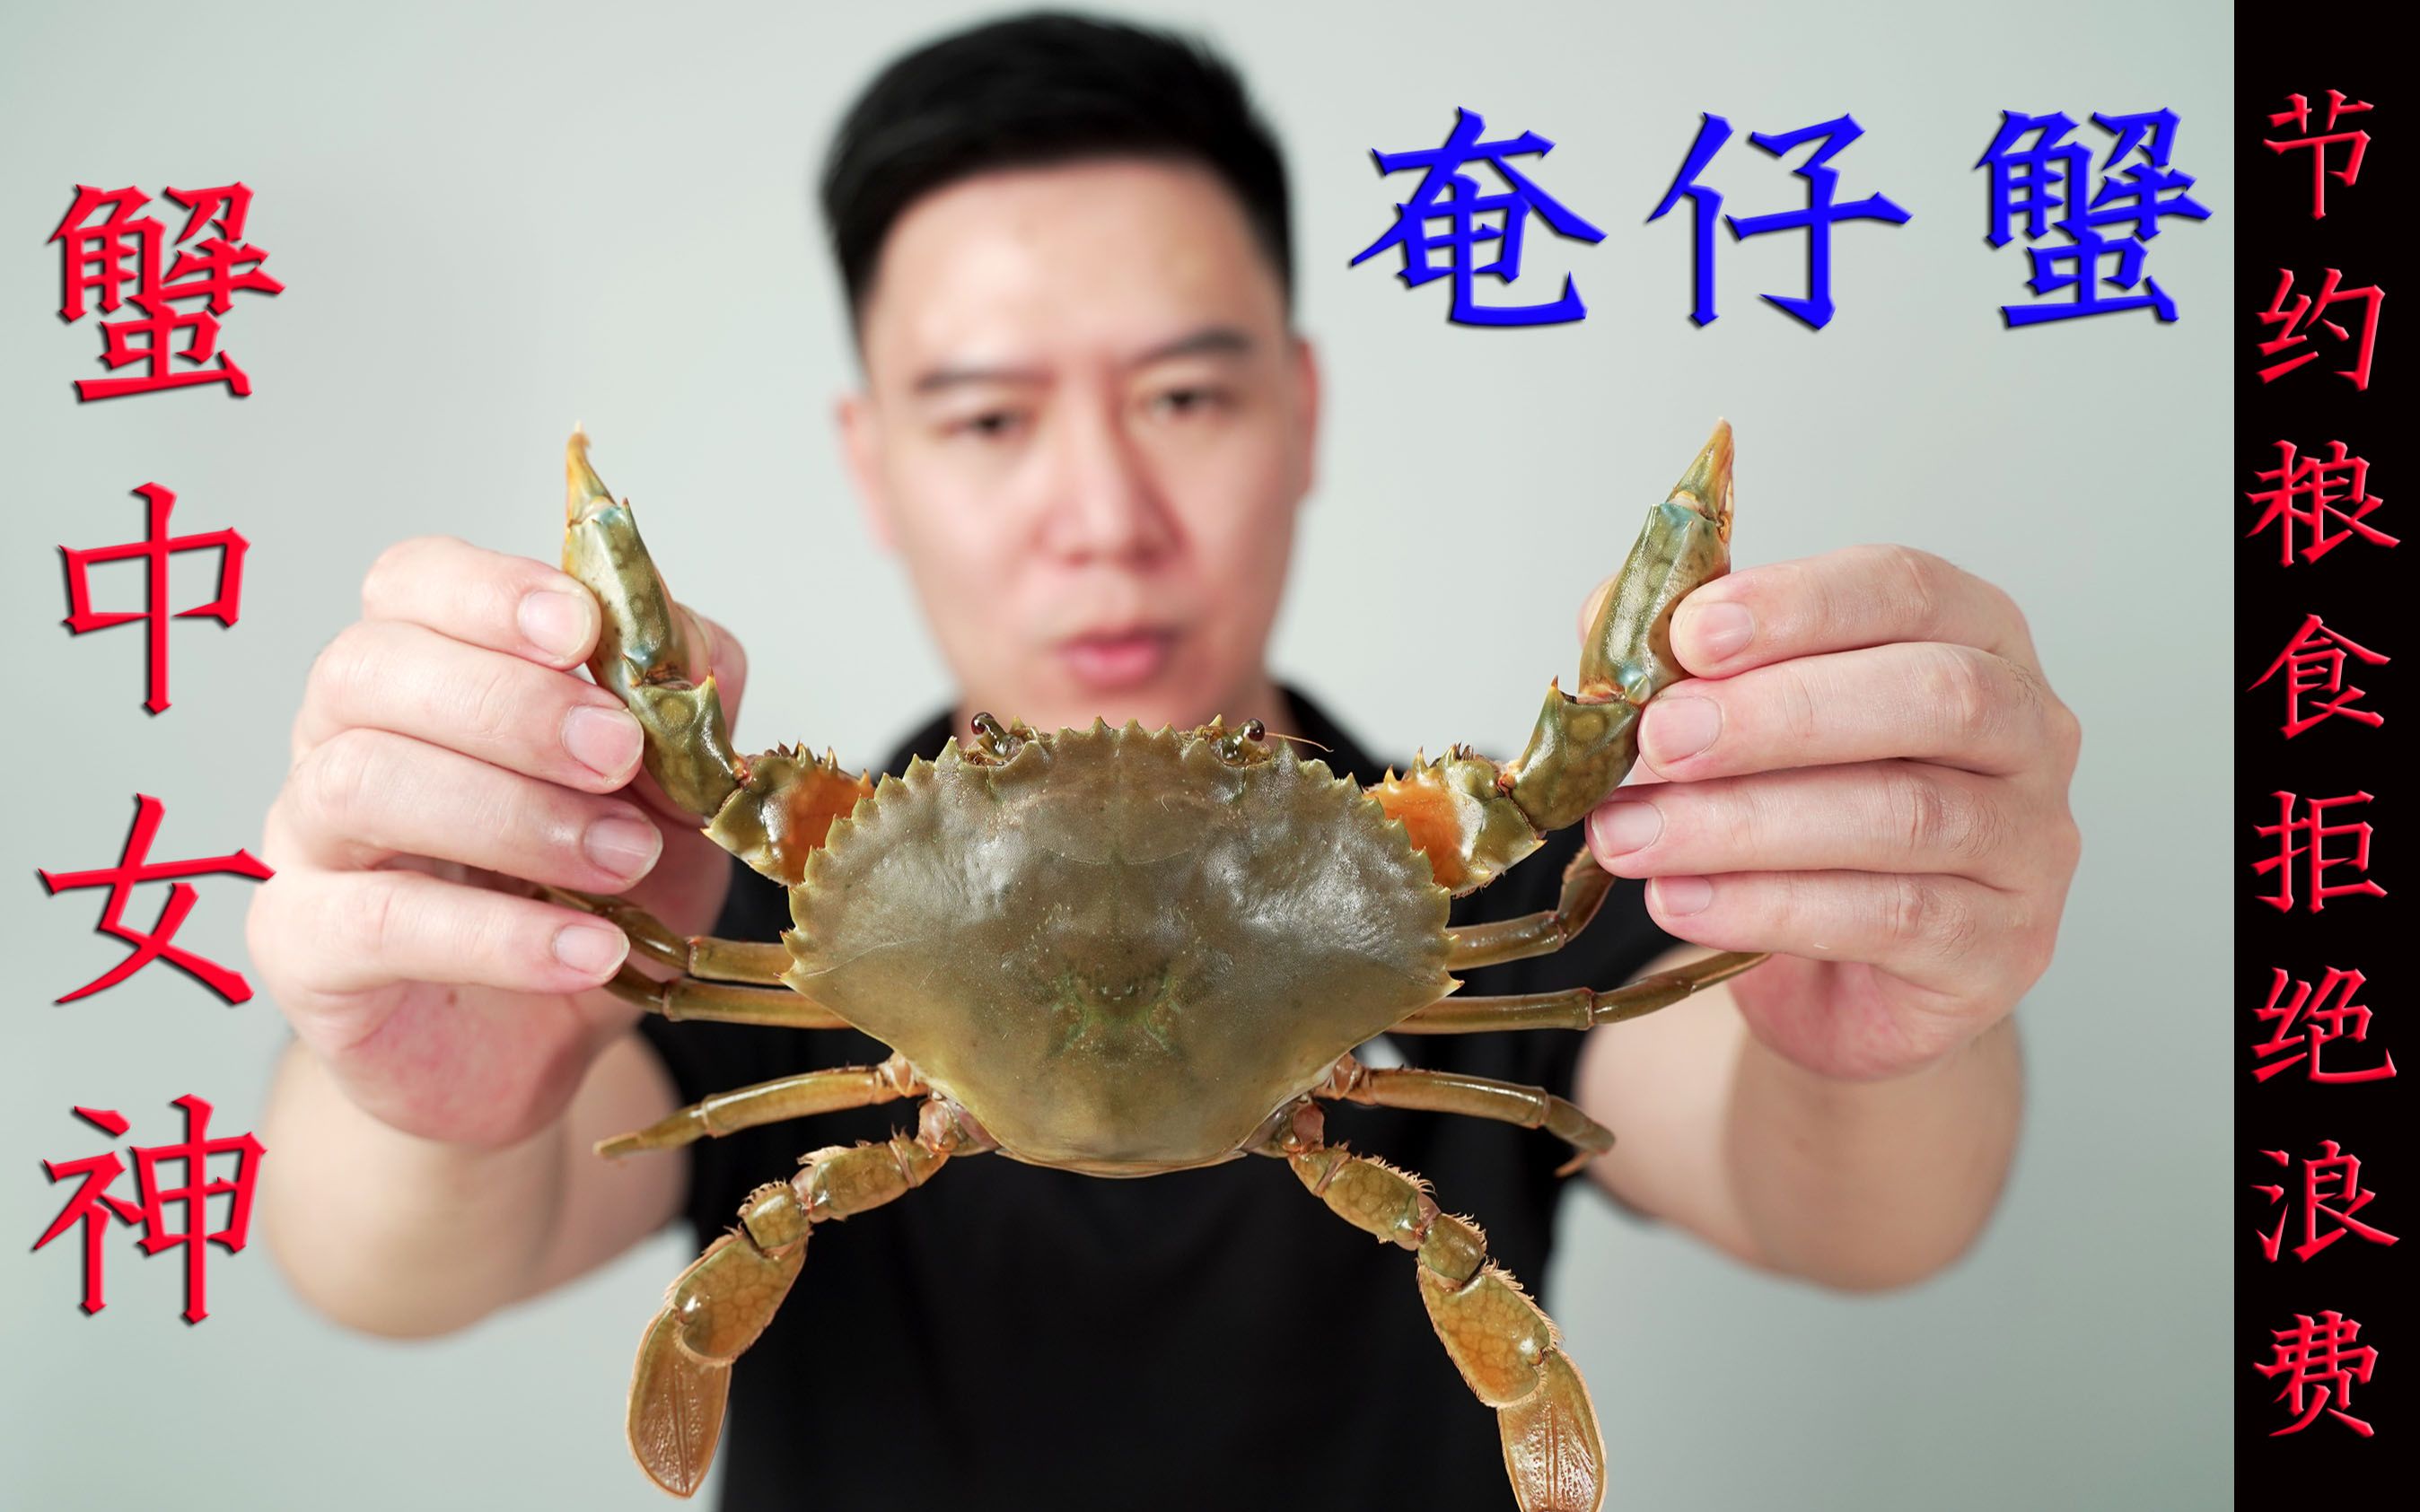 试吃蟹中女神—奄仔蟹，切开满满蟹黄，目前吃过性价比最高的螃蟹